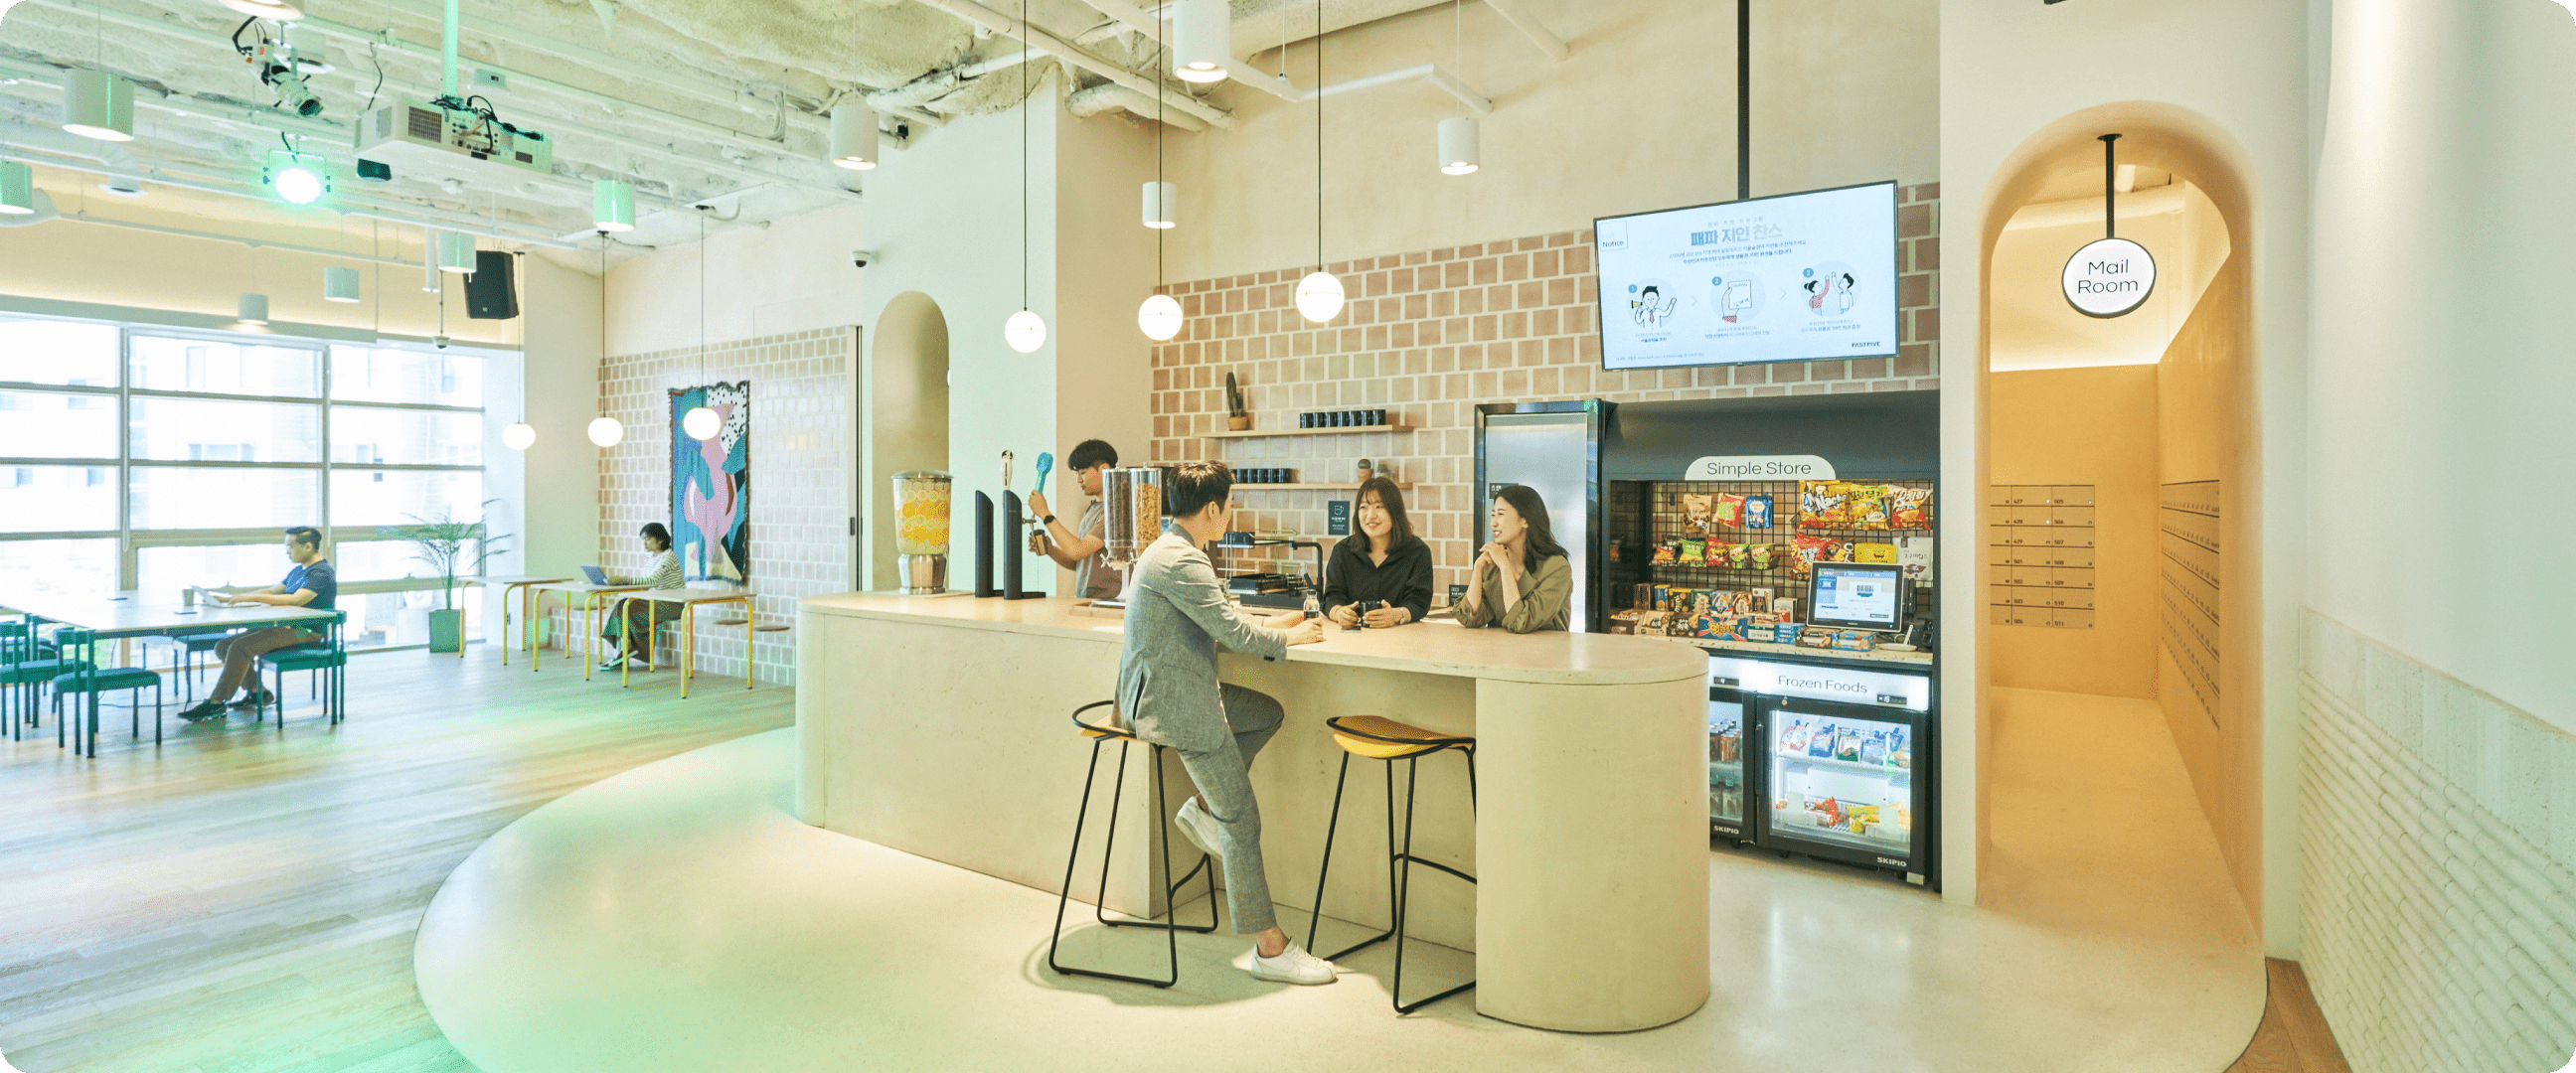 패스트파이브 서울숲점 간식과 커피가 있는 휴게 공간